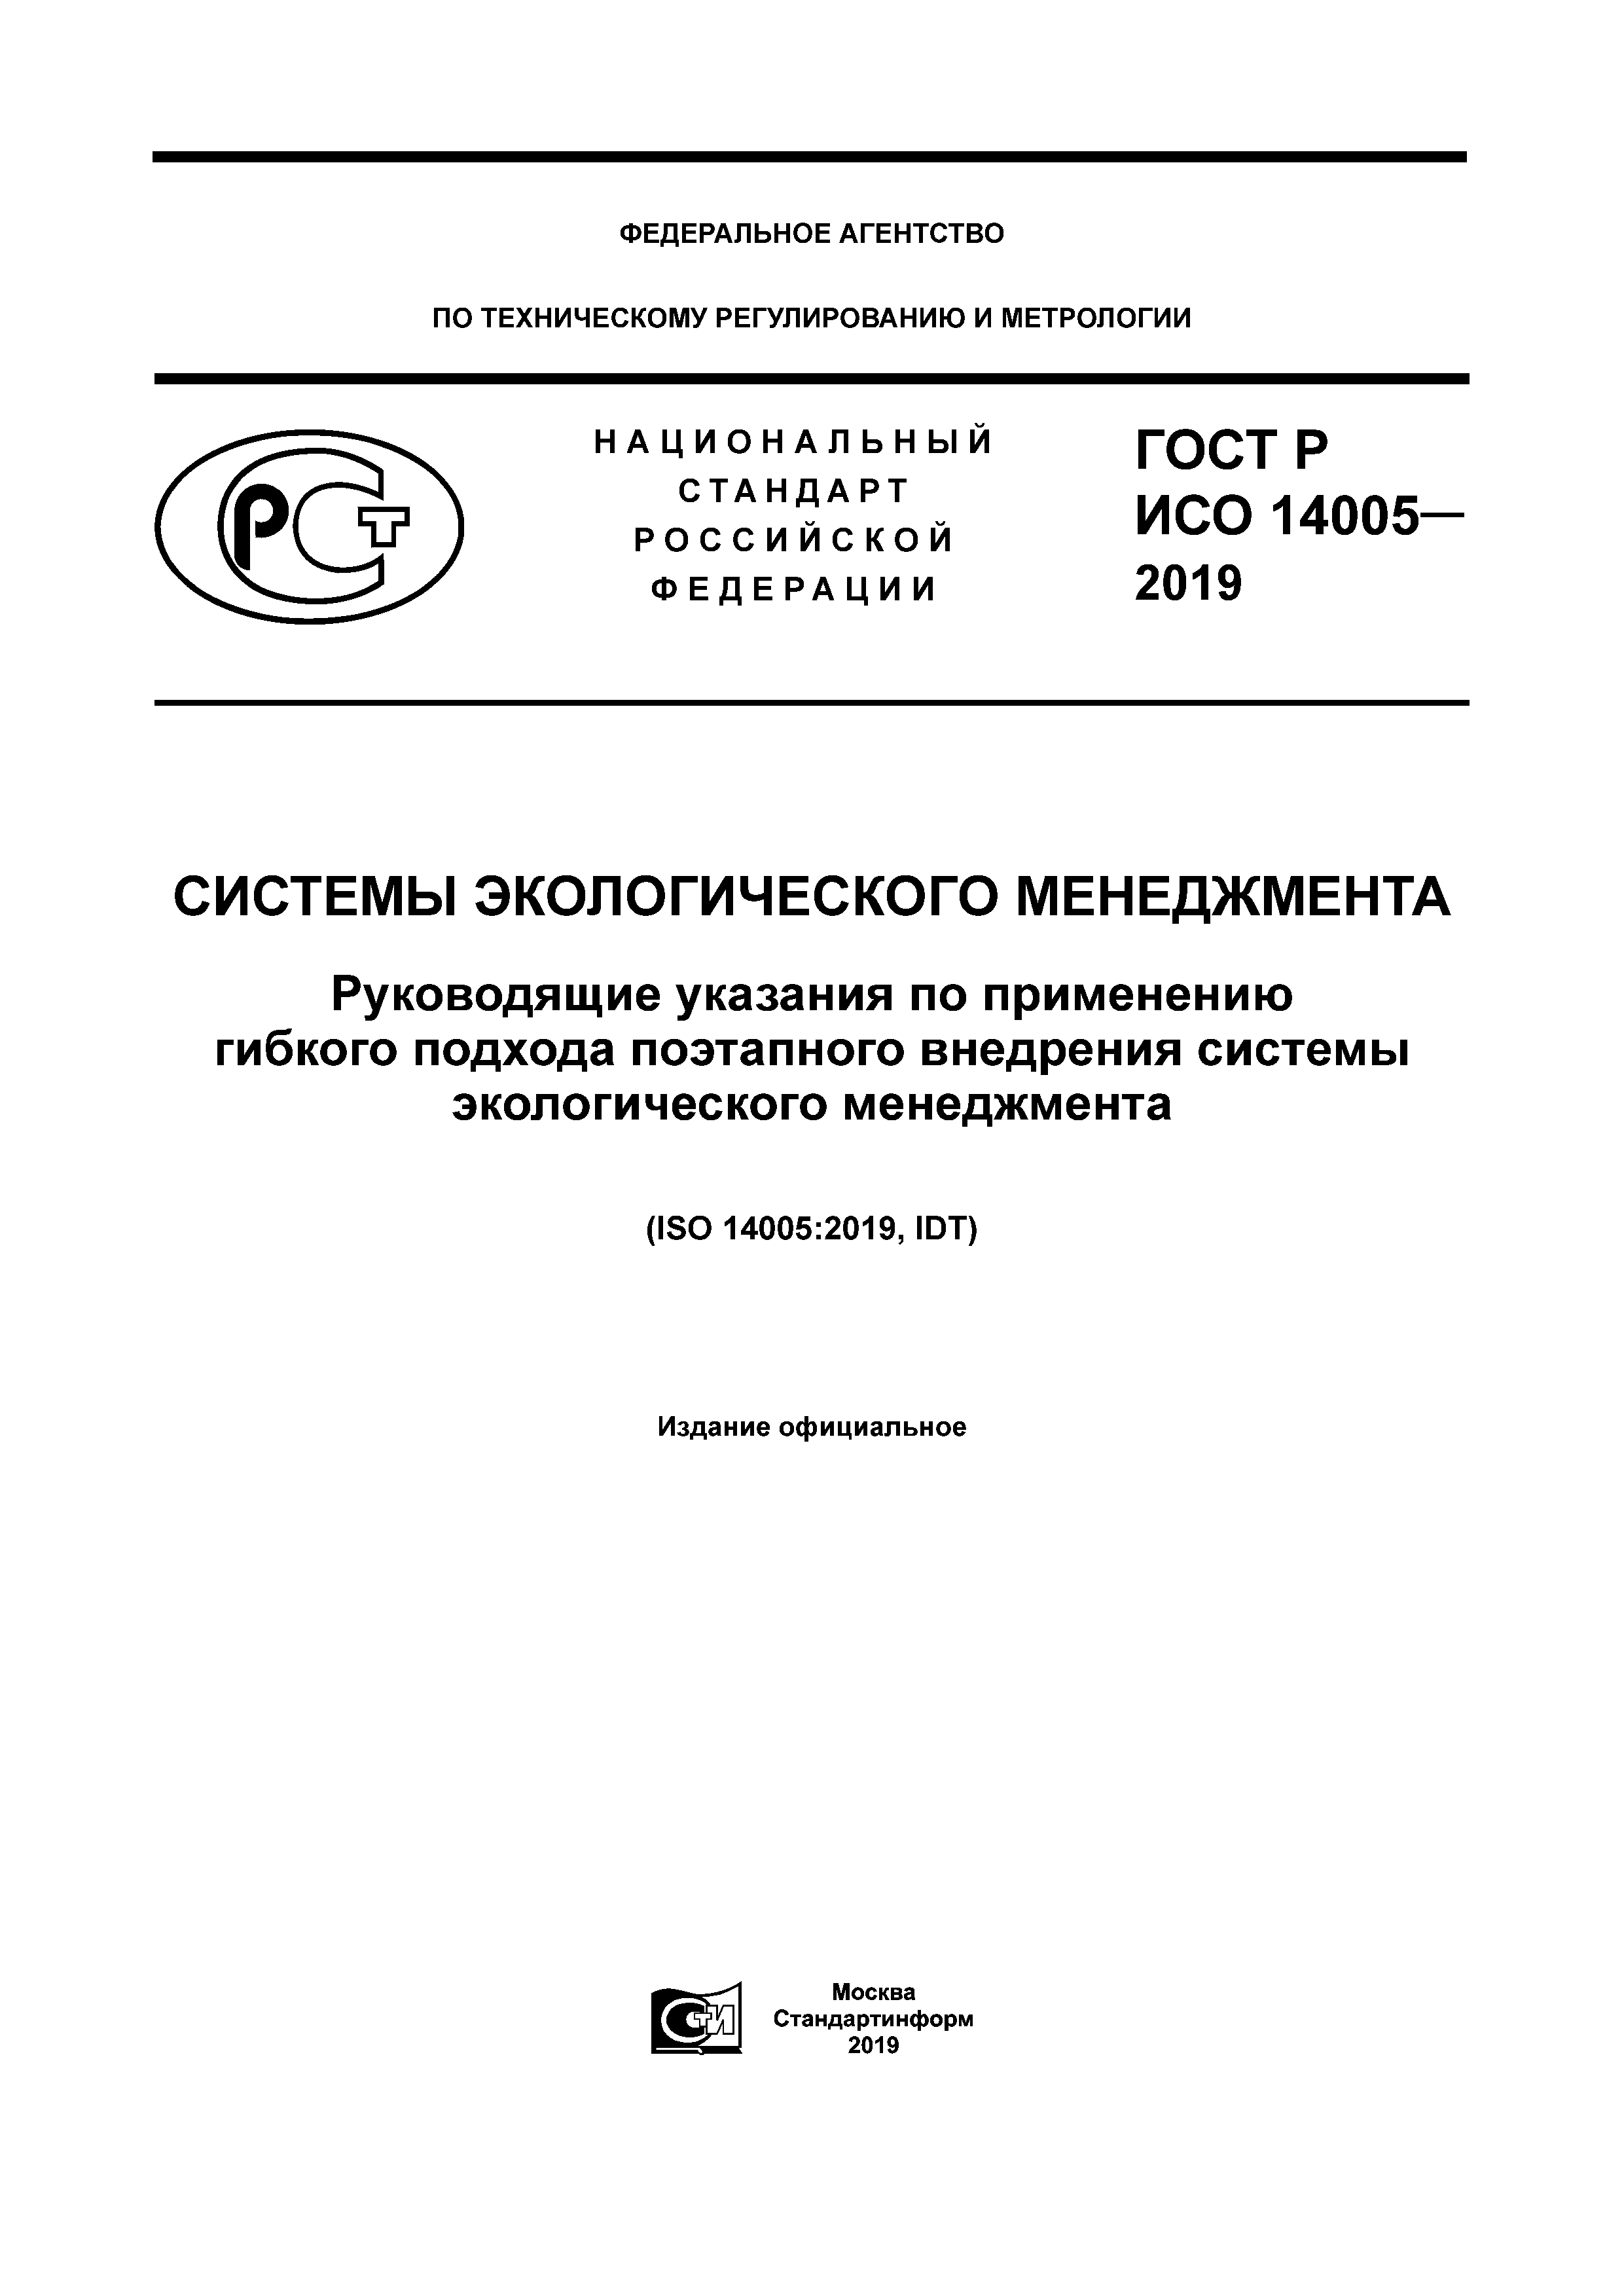 ГОСТ Р ИСО 14005-2019